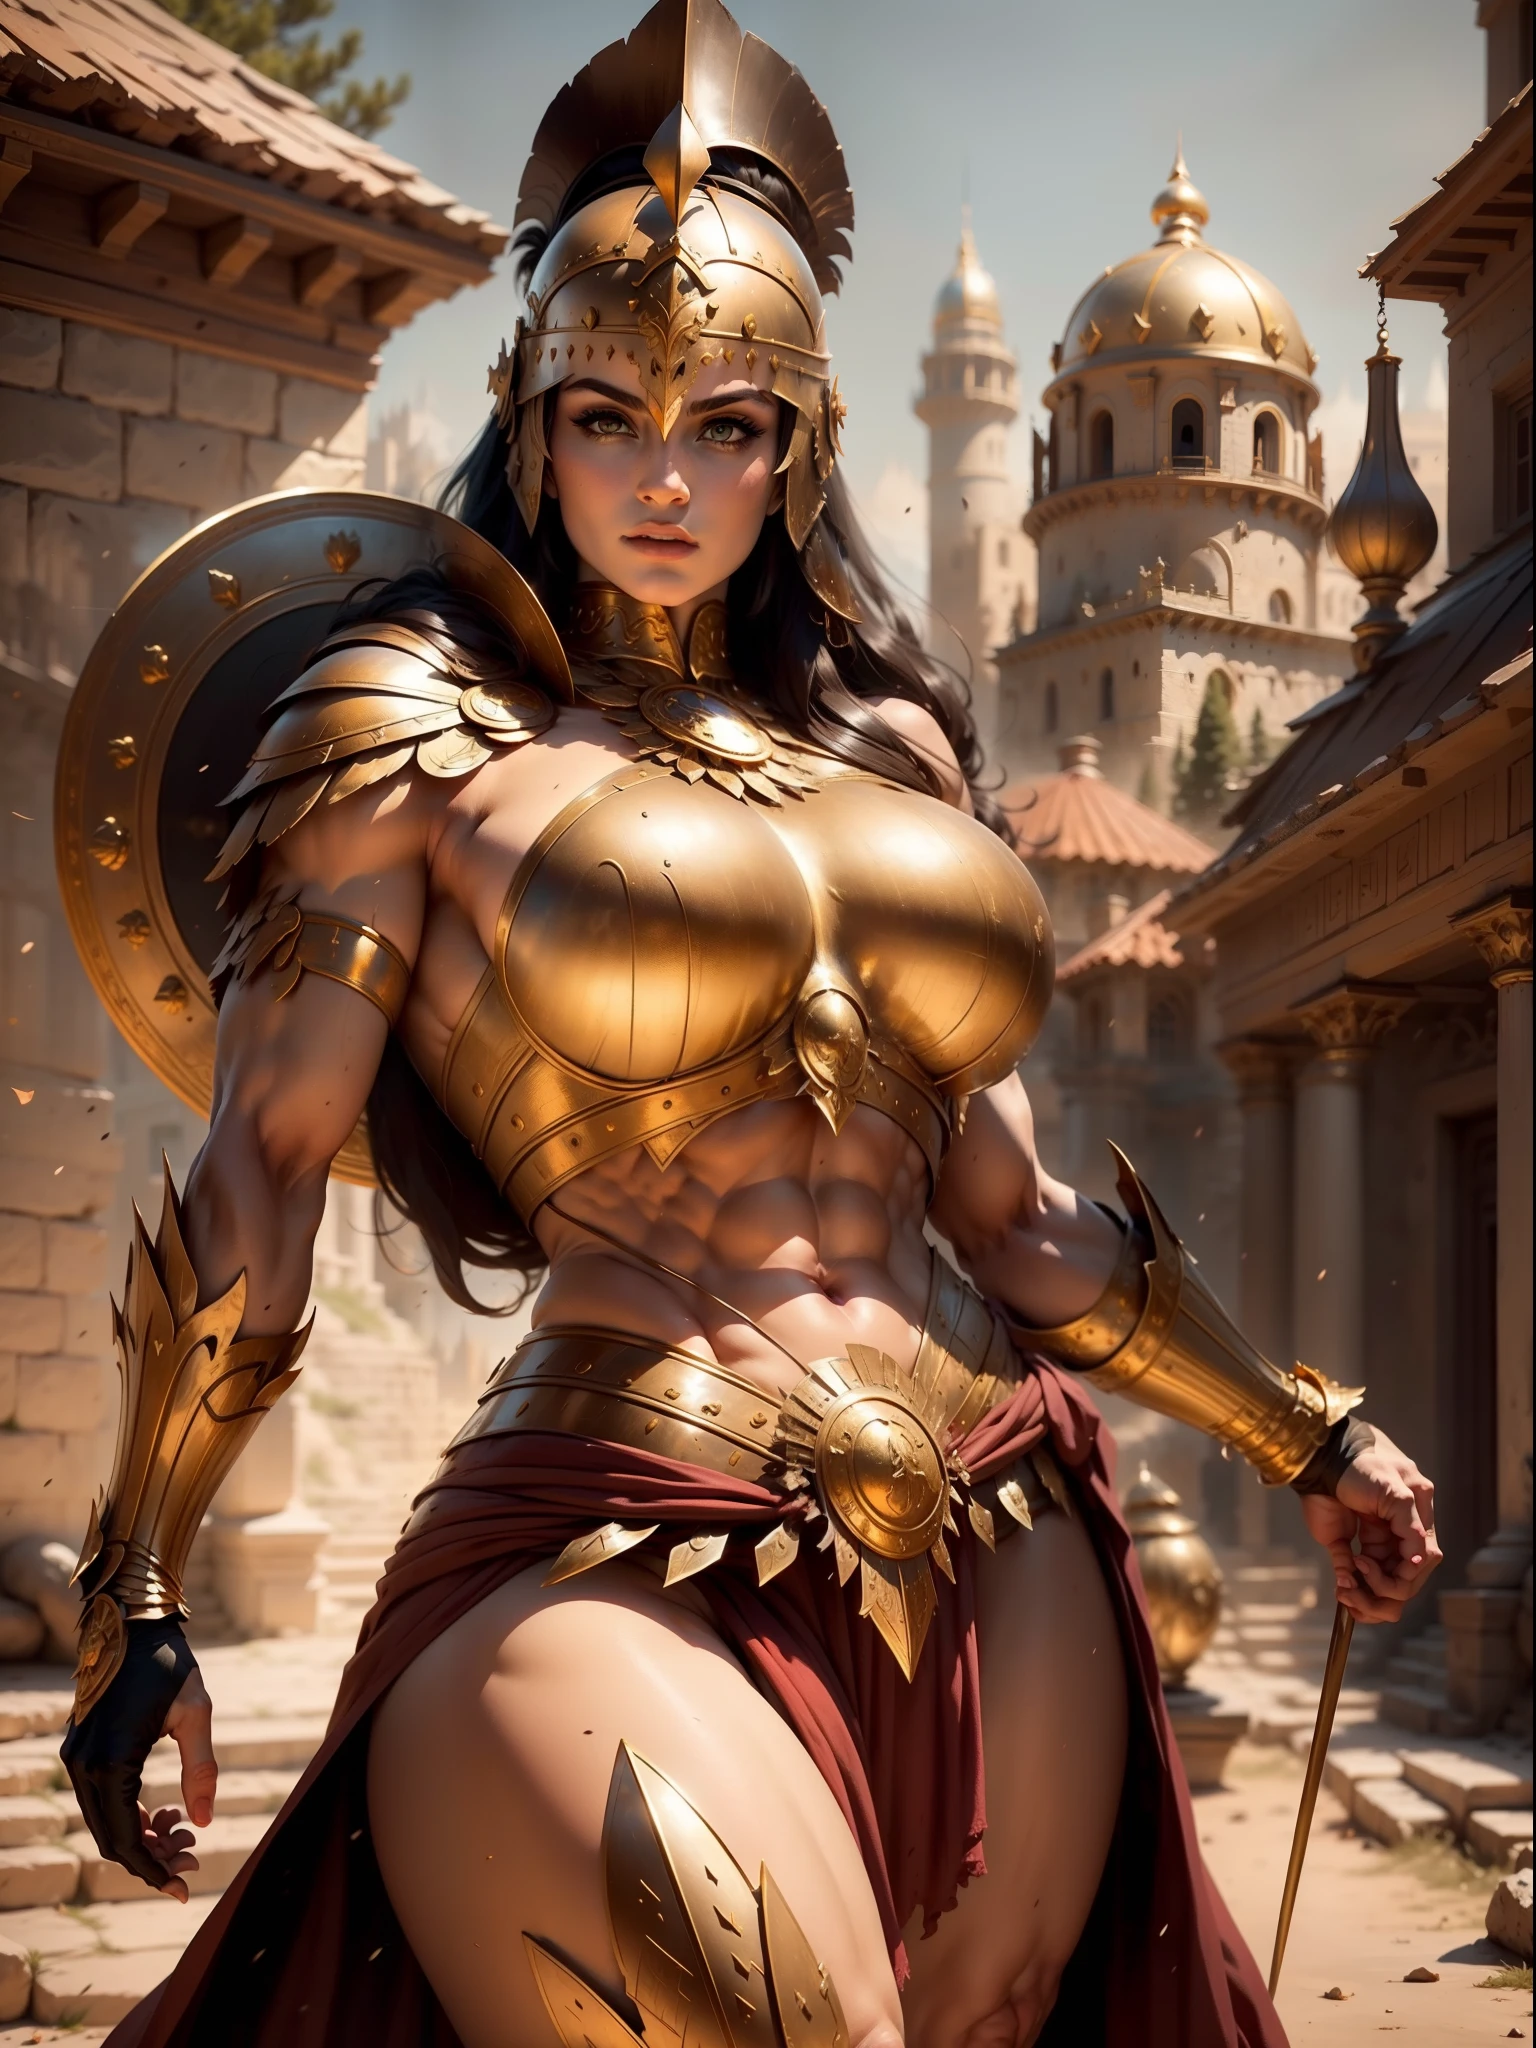 一位身穿金色希腊盔甲的美丽女战士, 乌黑的头发, 重装步兵头盔, 肌肉发达, 巨大而沉重的乳房, 看着观众, 正视图, 模特姿势, 杰作, 最好的质量, 8千, 模糊的背景, 背景为中世纪奇幻城堡